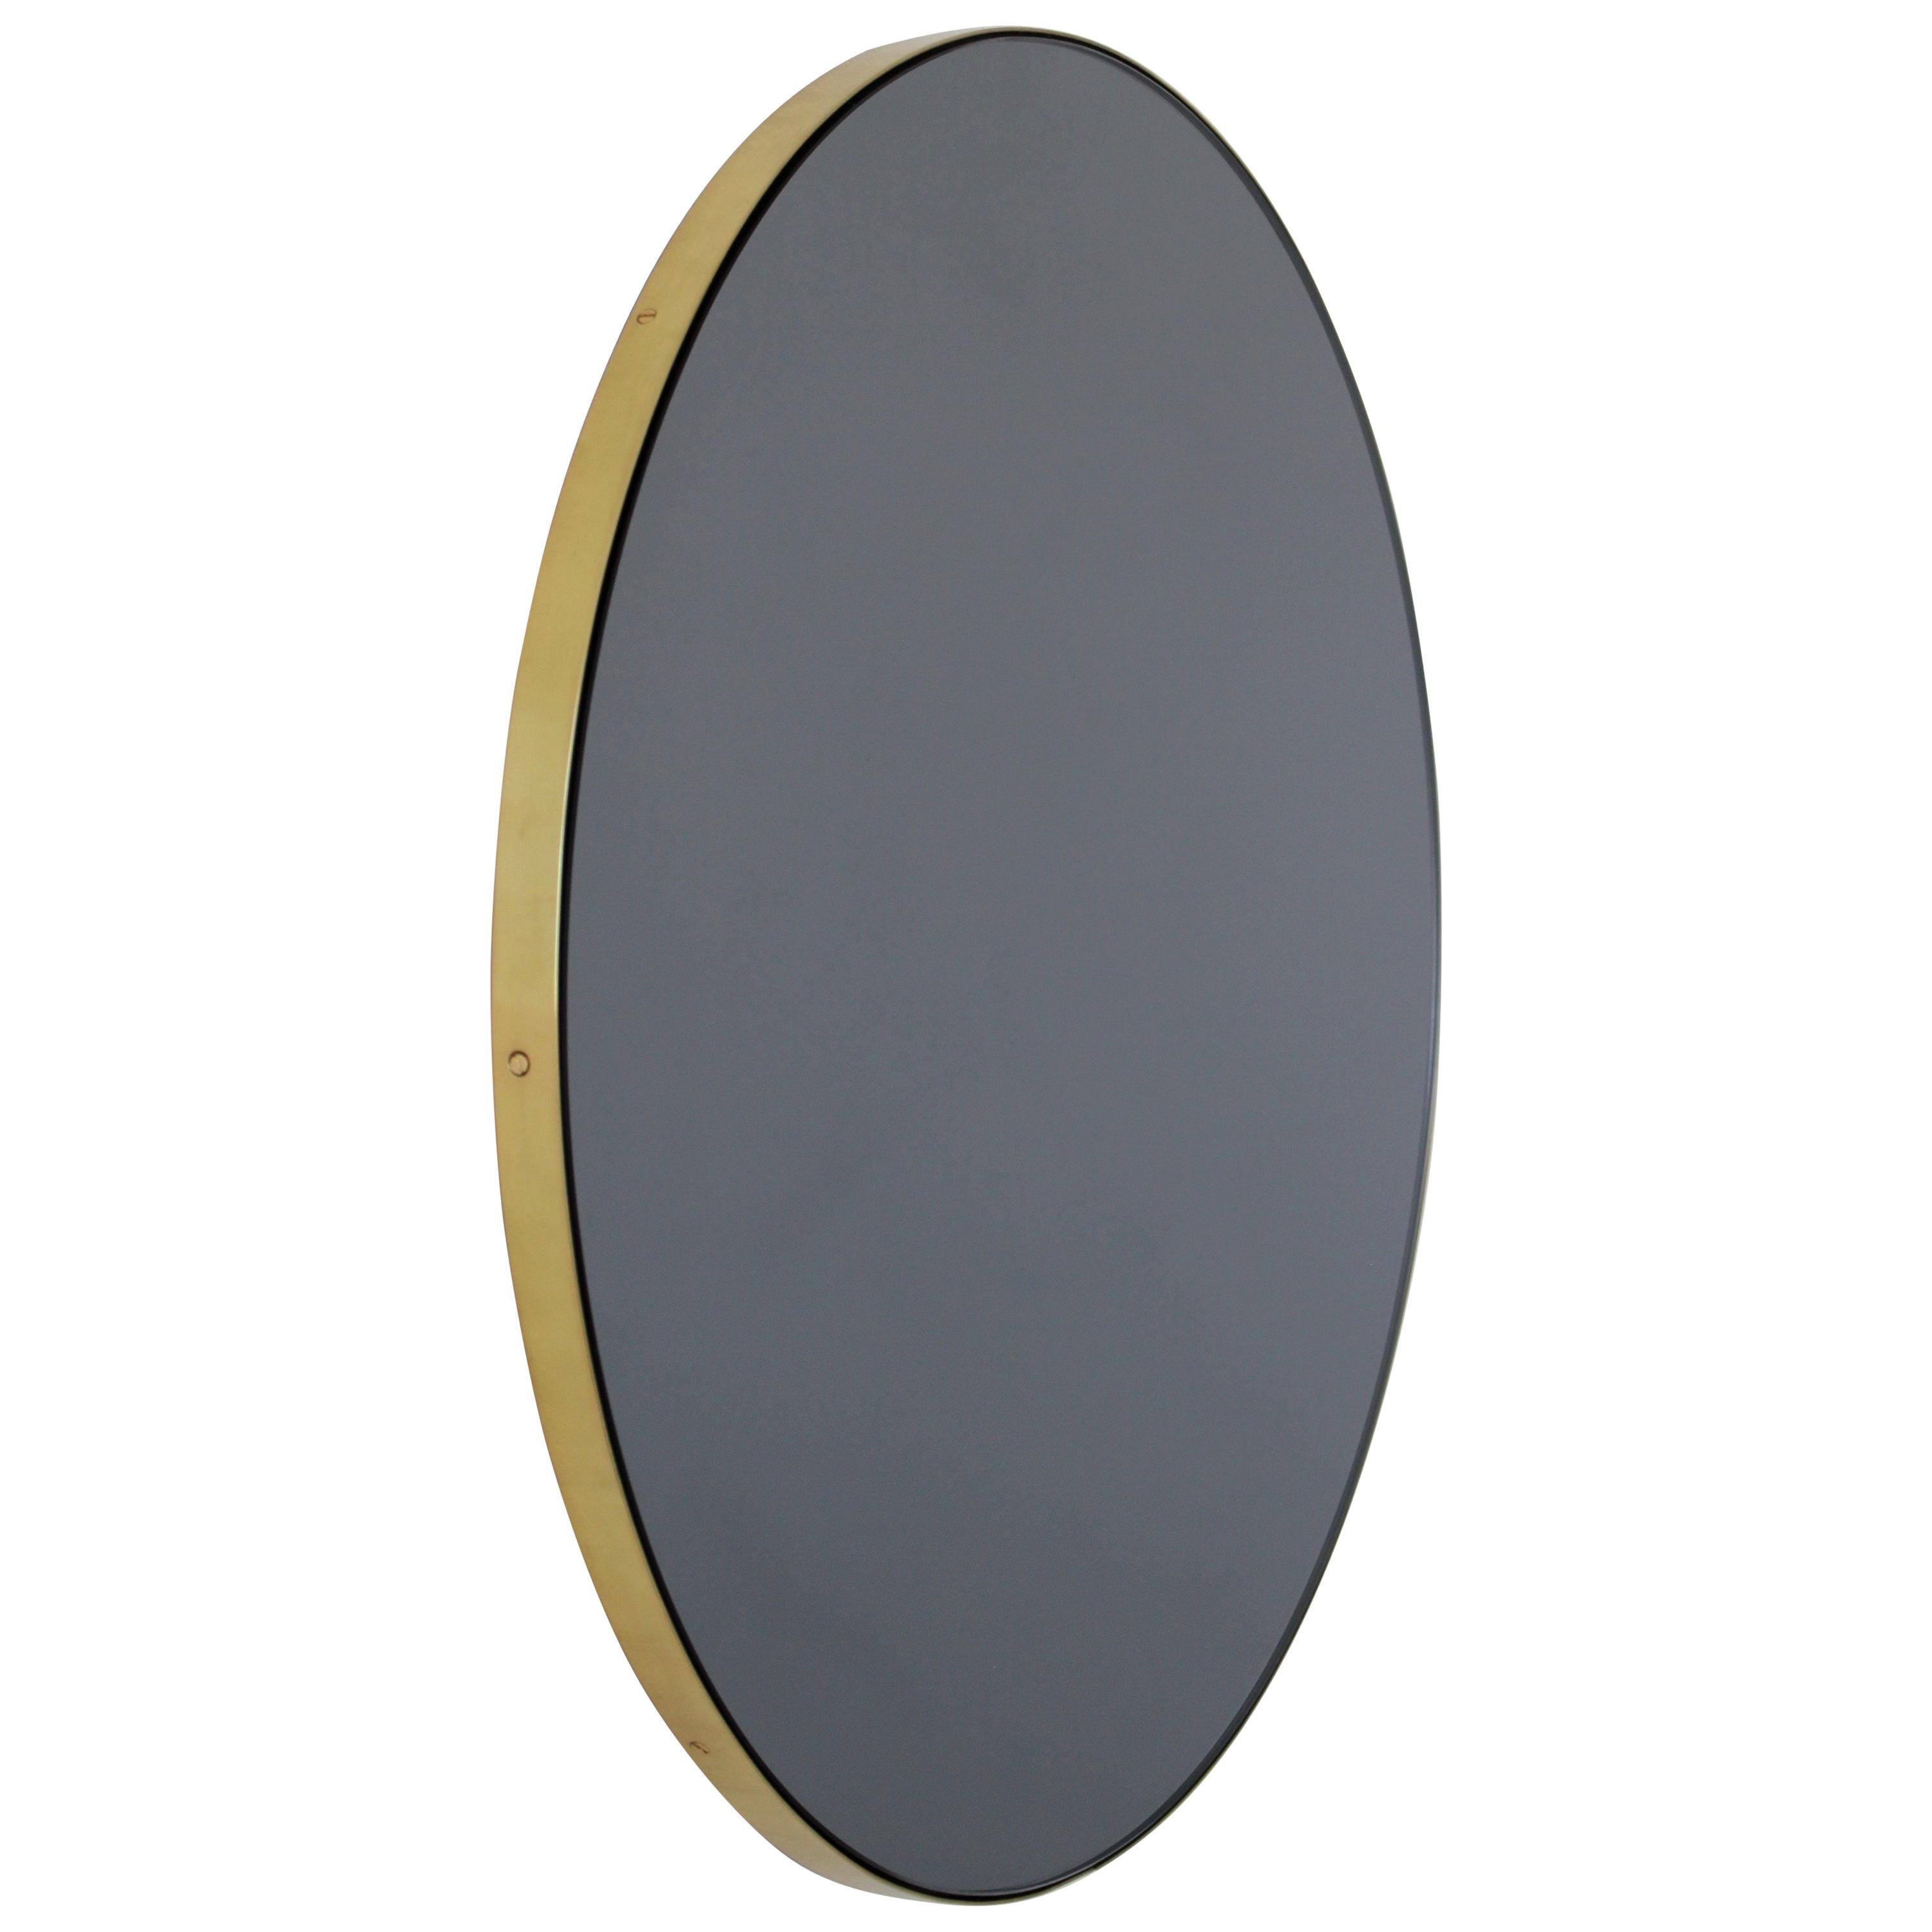 Orbis Black Tinted Round Contemporary Mirror with a Brass Frame, Small (Miroir contemporain rond teinté noir avec cadre en laiton)